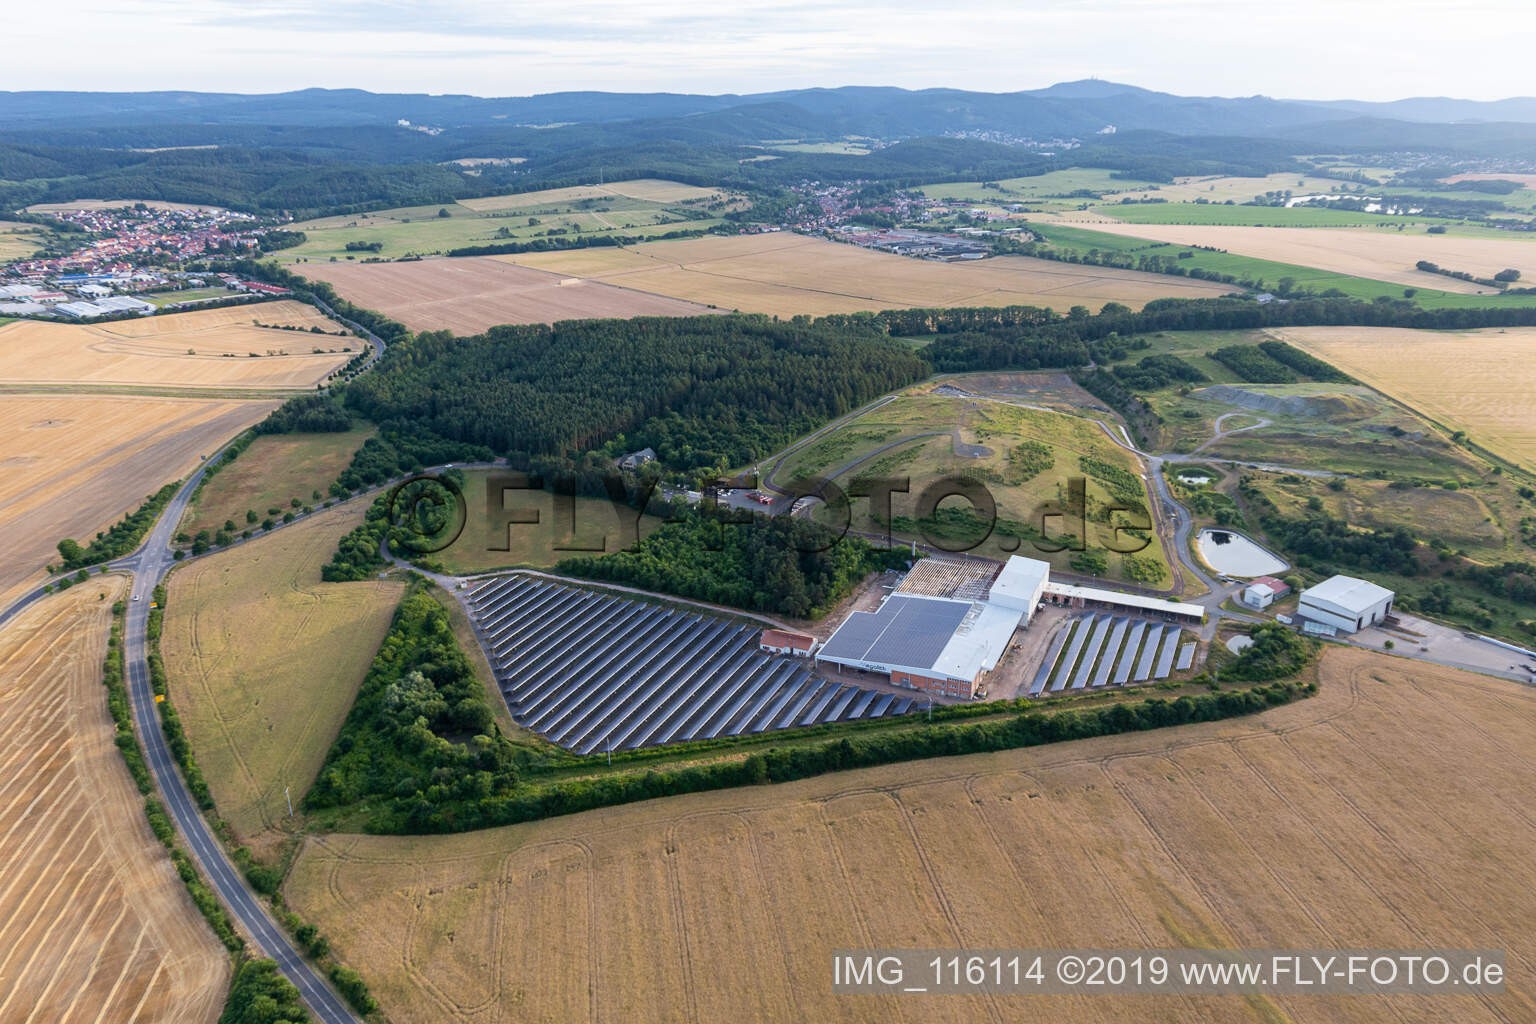 Vue aérienne de Rangées de panneaux du système photovoltaïque et parc solaire ou centrale solaire sur la décharge du service municipal des déchets du quartier de Gotha à Leinatal dans le département Thuringe, Allemagne